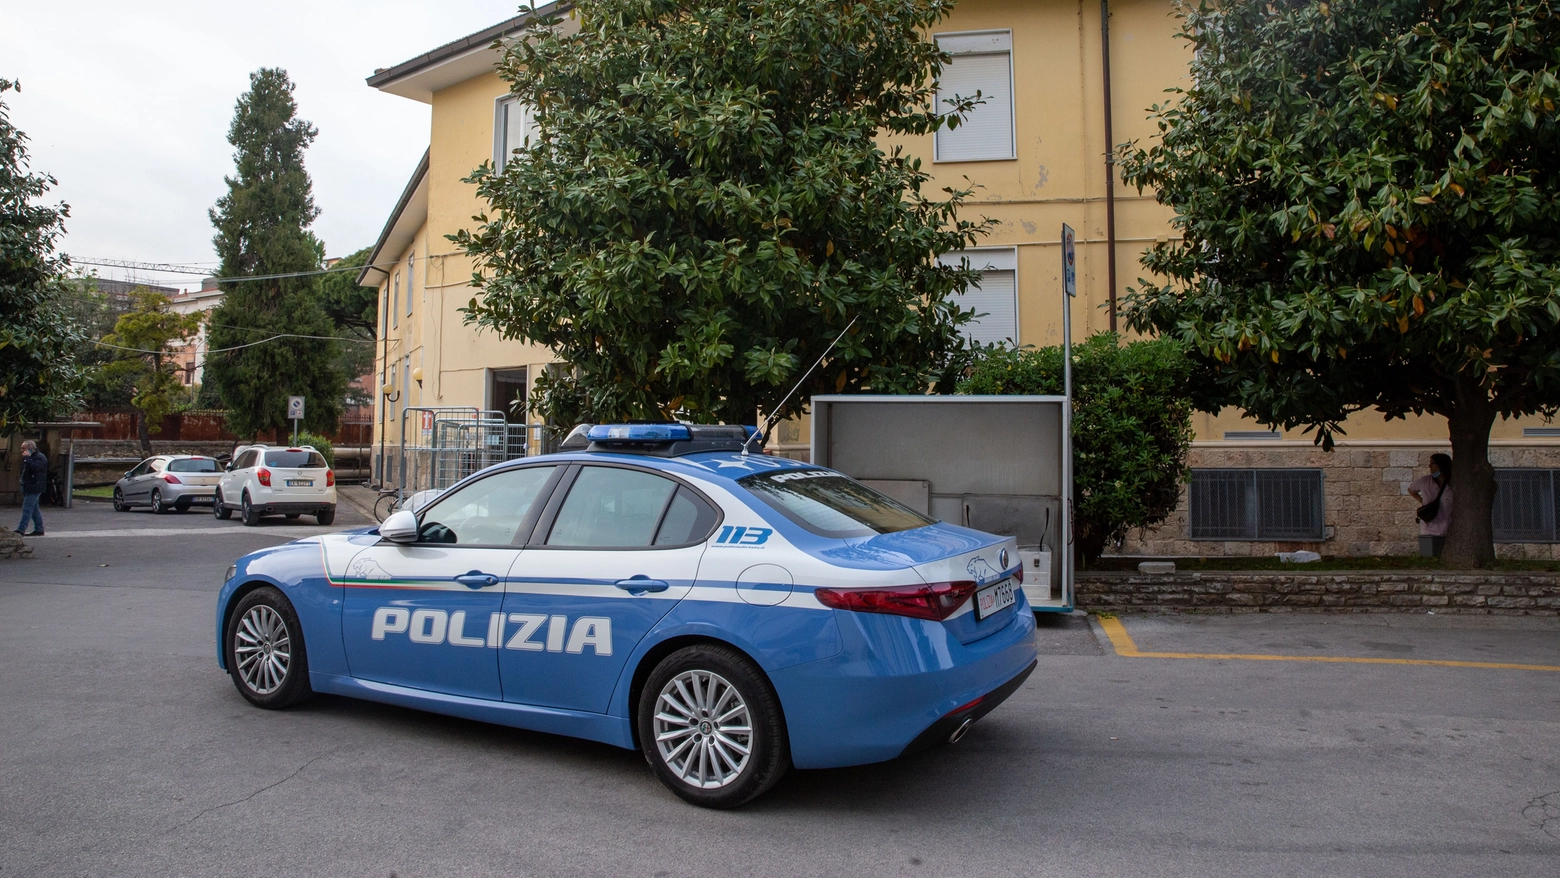 La polizia intervenuta dopo l'aggressione alla psichiatra (Foto Enrico Mattia del Punta)